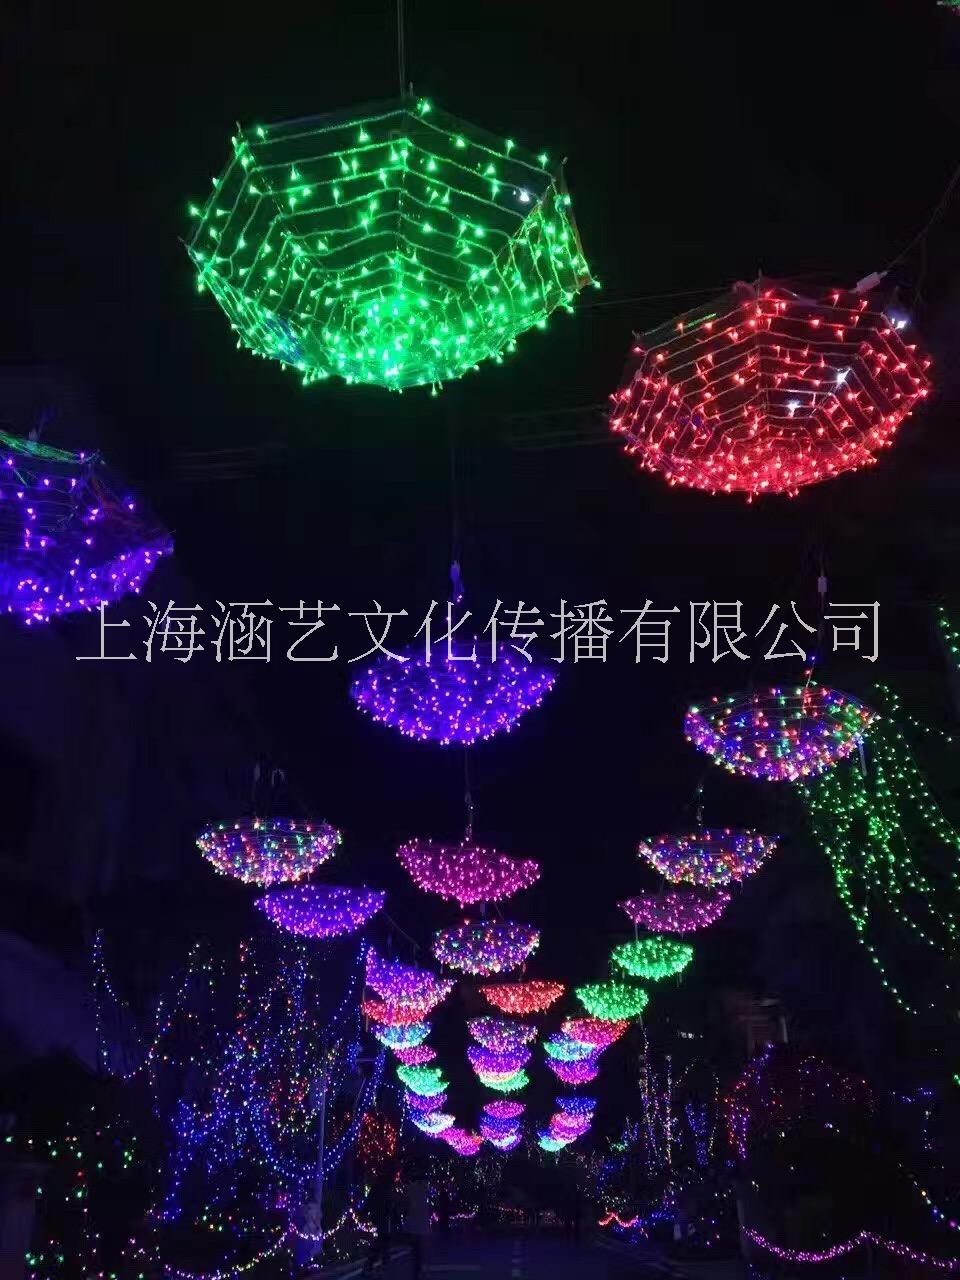 上海创意灯光展 灯光节造型厂家 认准涵艺文化图片